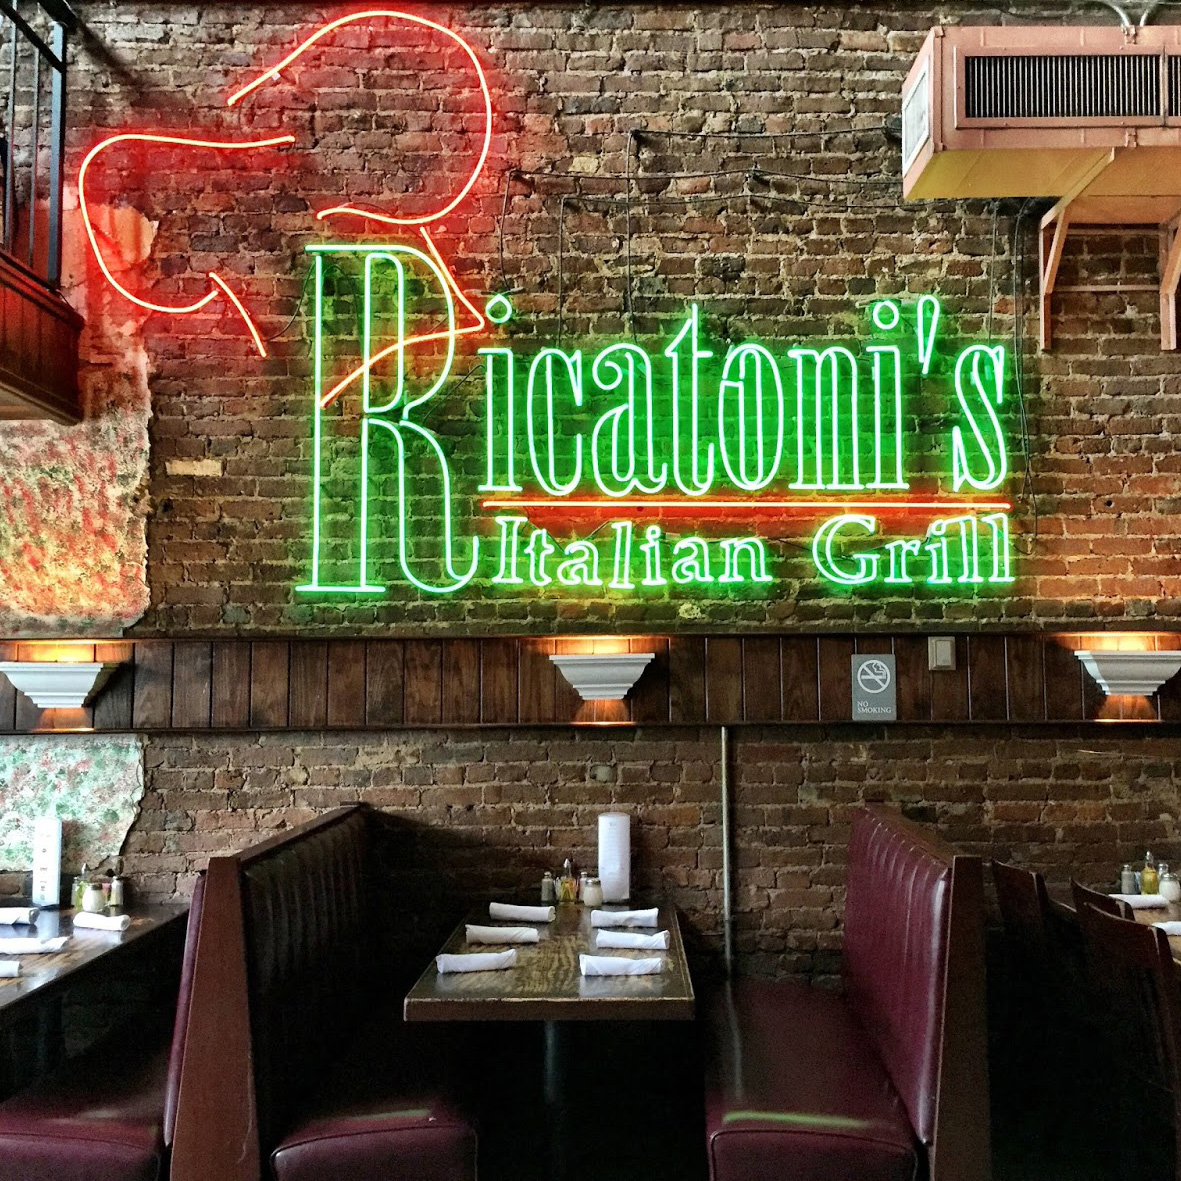 Ricatoni's